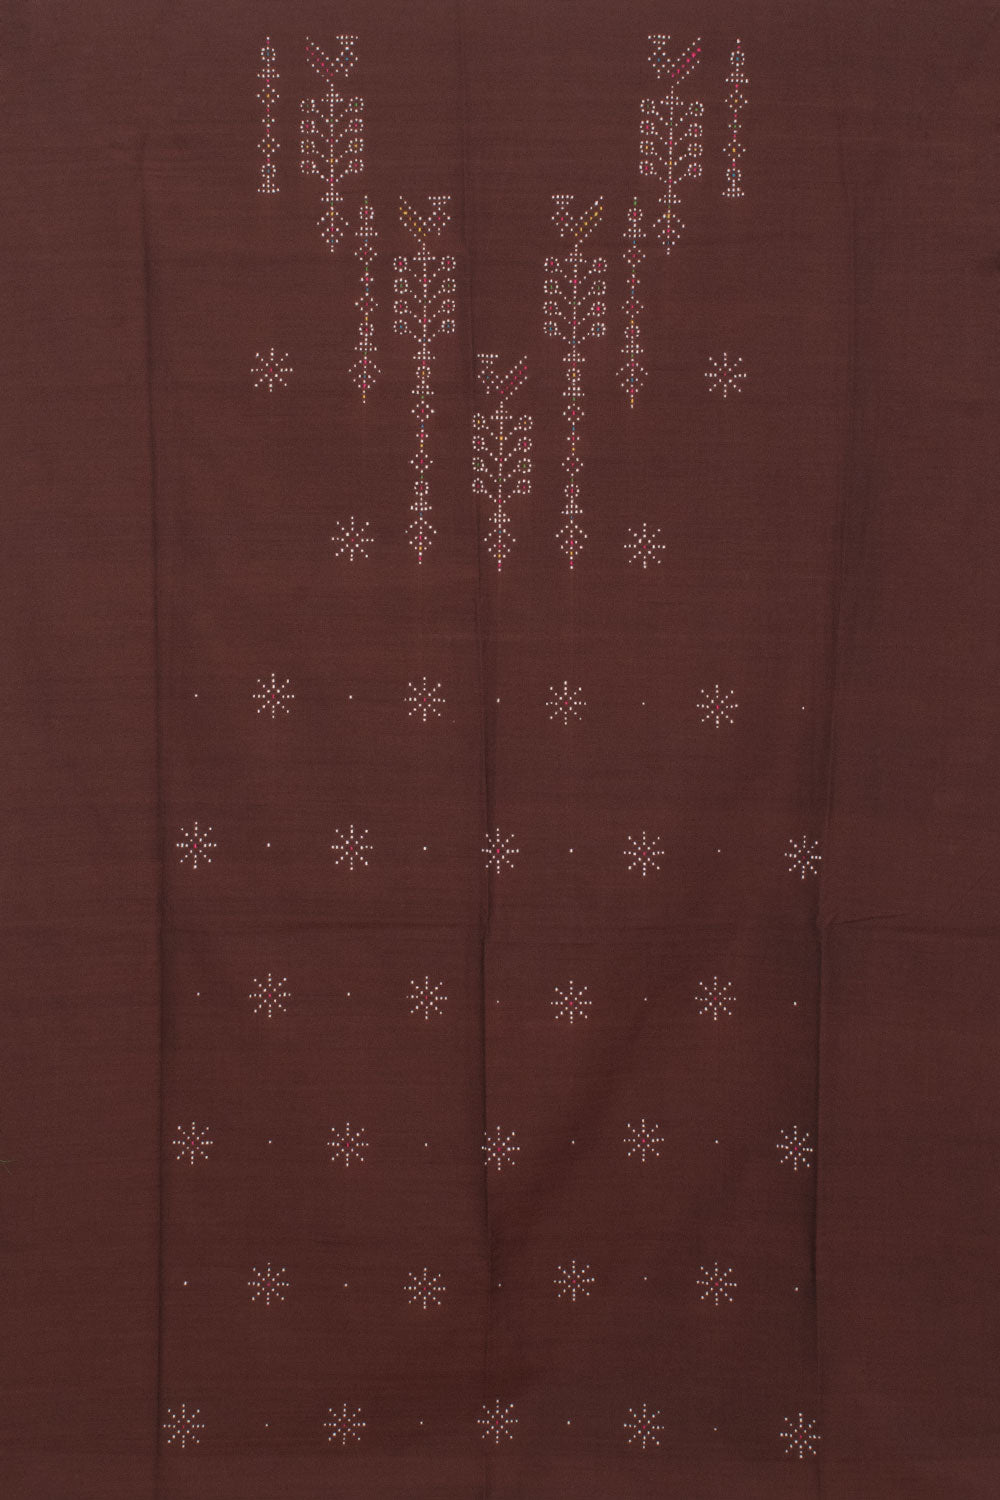 Tangaliya Cotton 2-Piece Salwar Suit Material 10058606